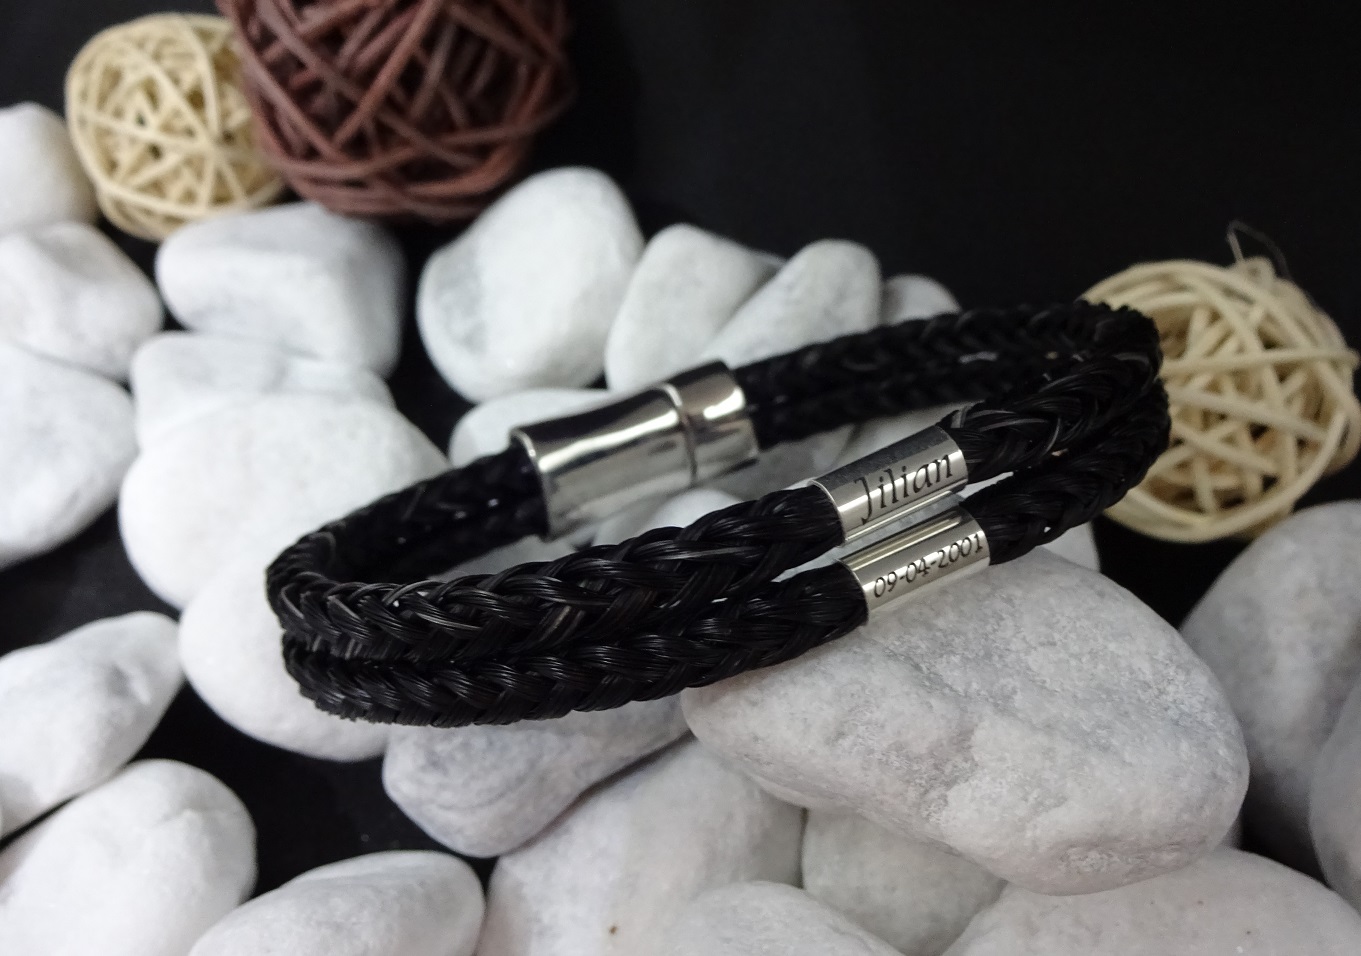 DVS: Doppelt viereckig geflochtenes Armband mit Edelstahl-Magnet-Verschluss mit Sicherung, mit zwei 925er Silber Hülsen mit Gravur - Preis: 139 Euro